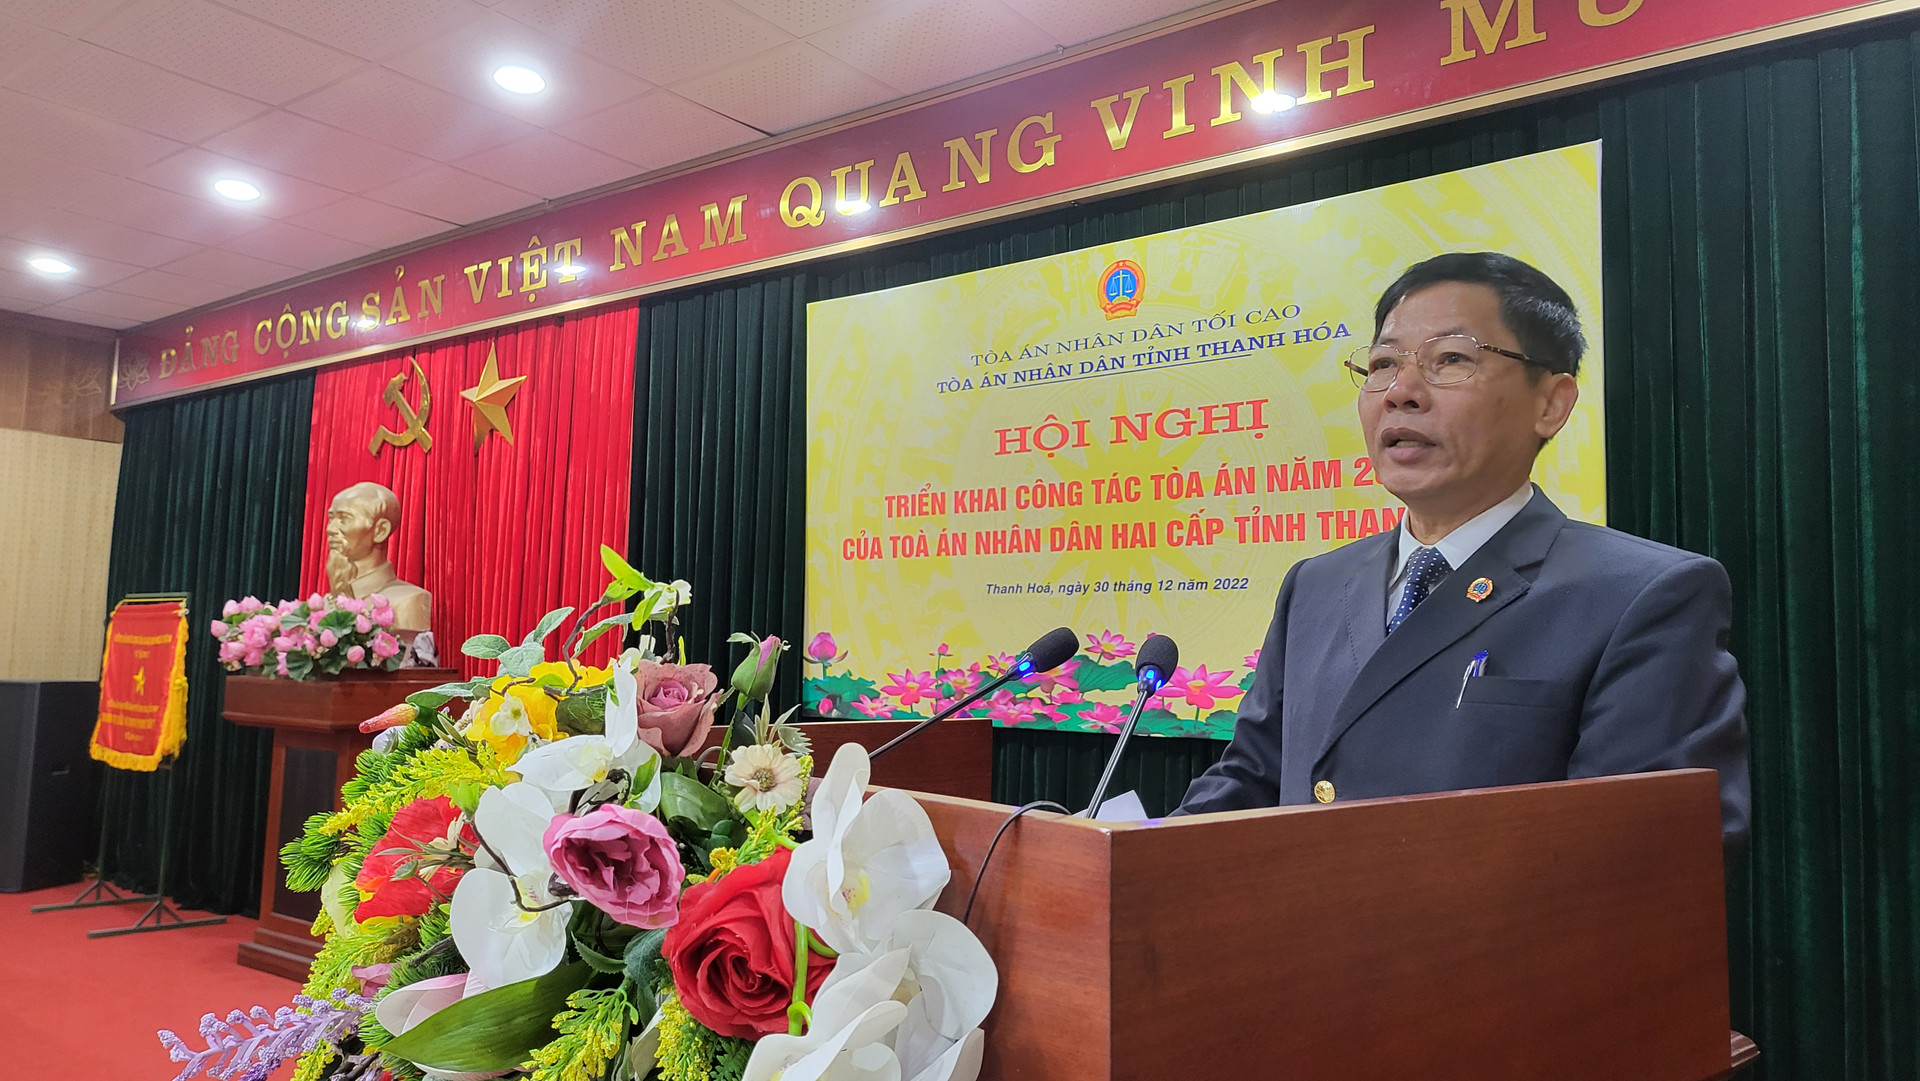 Đồng chi Hà Huy Hùng, Phó Chánh án TAND tỉnh Thanh Hóa trình bày báo cáo tại Hội nghị